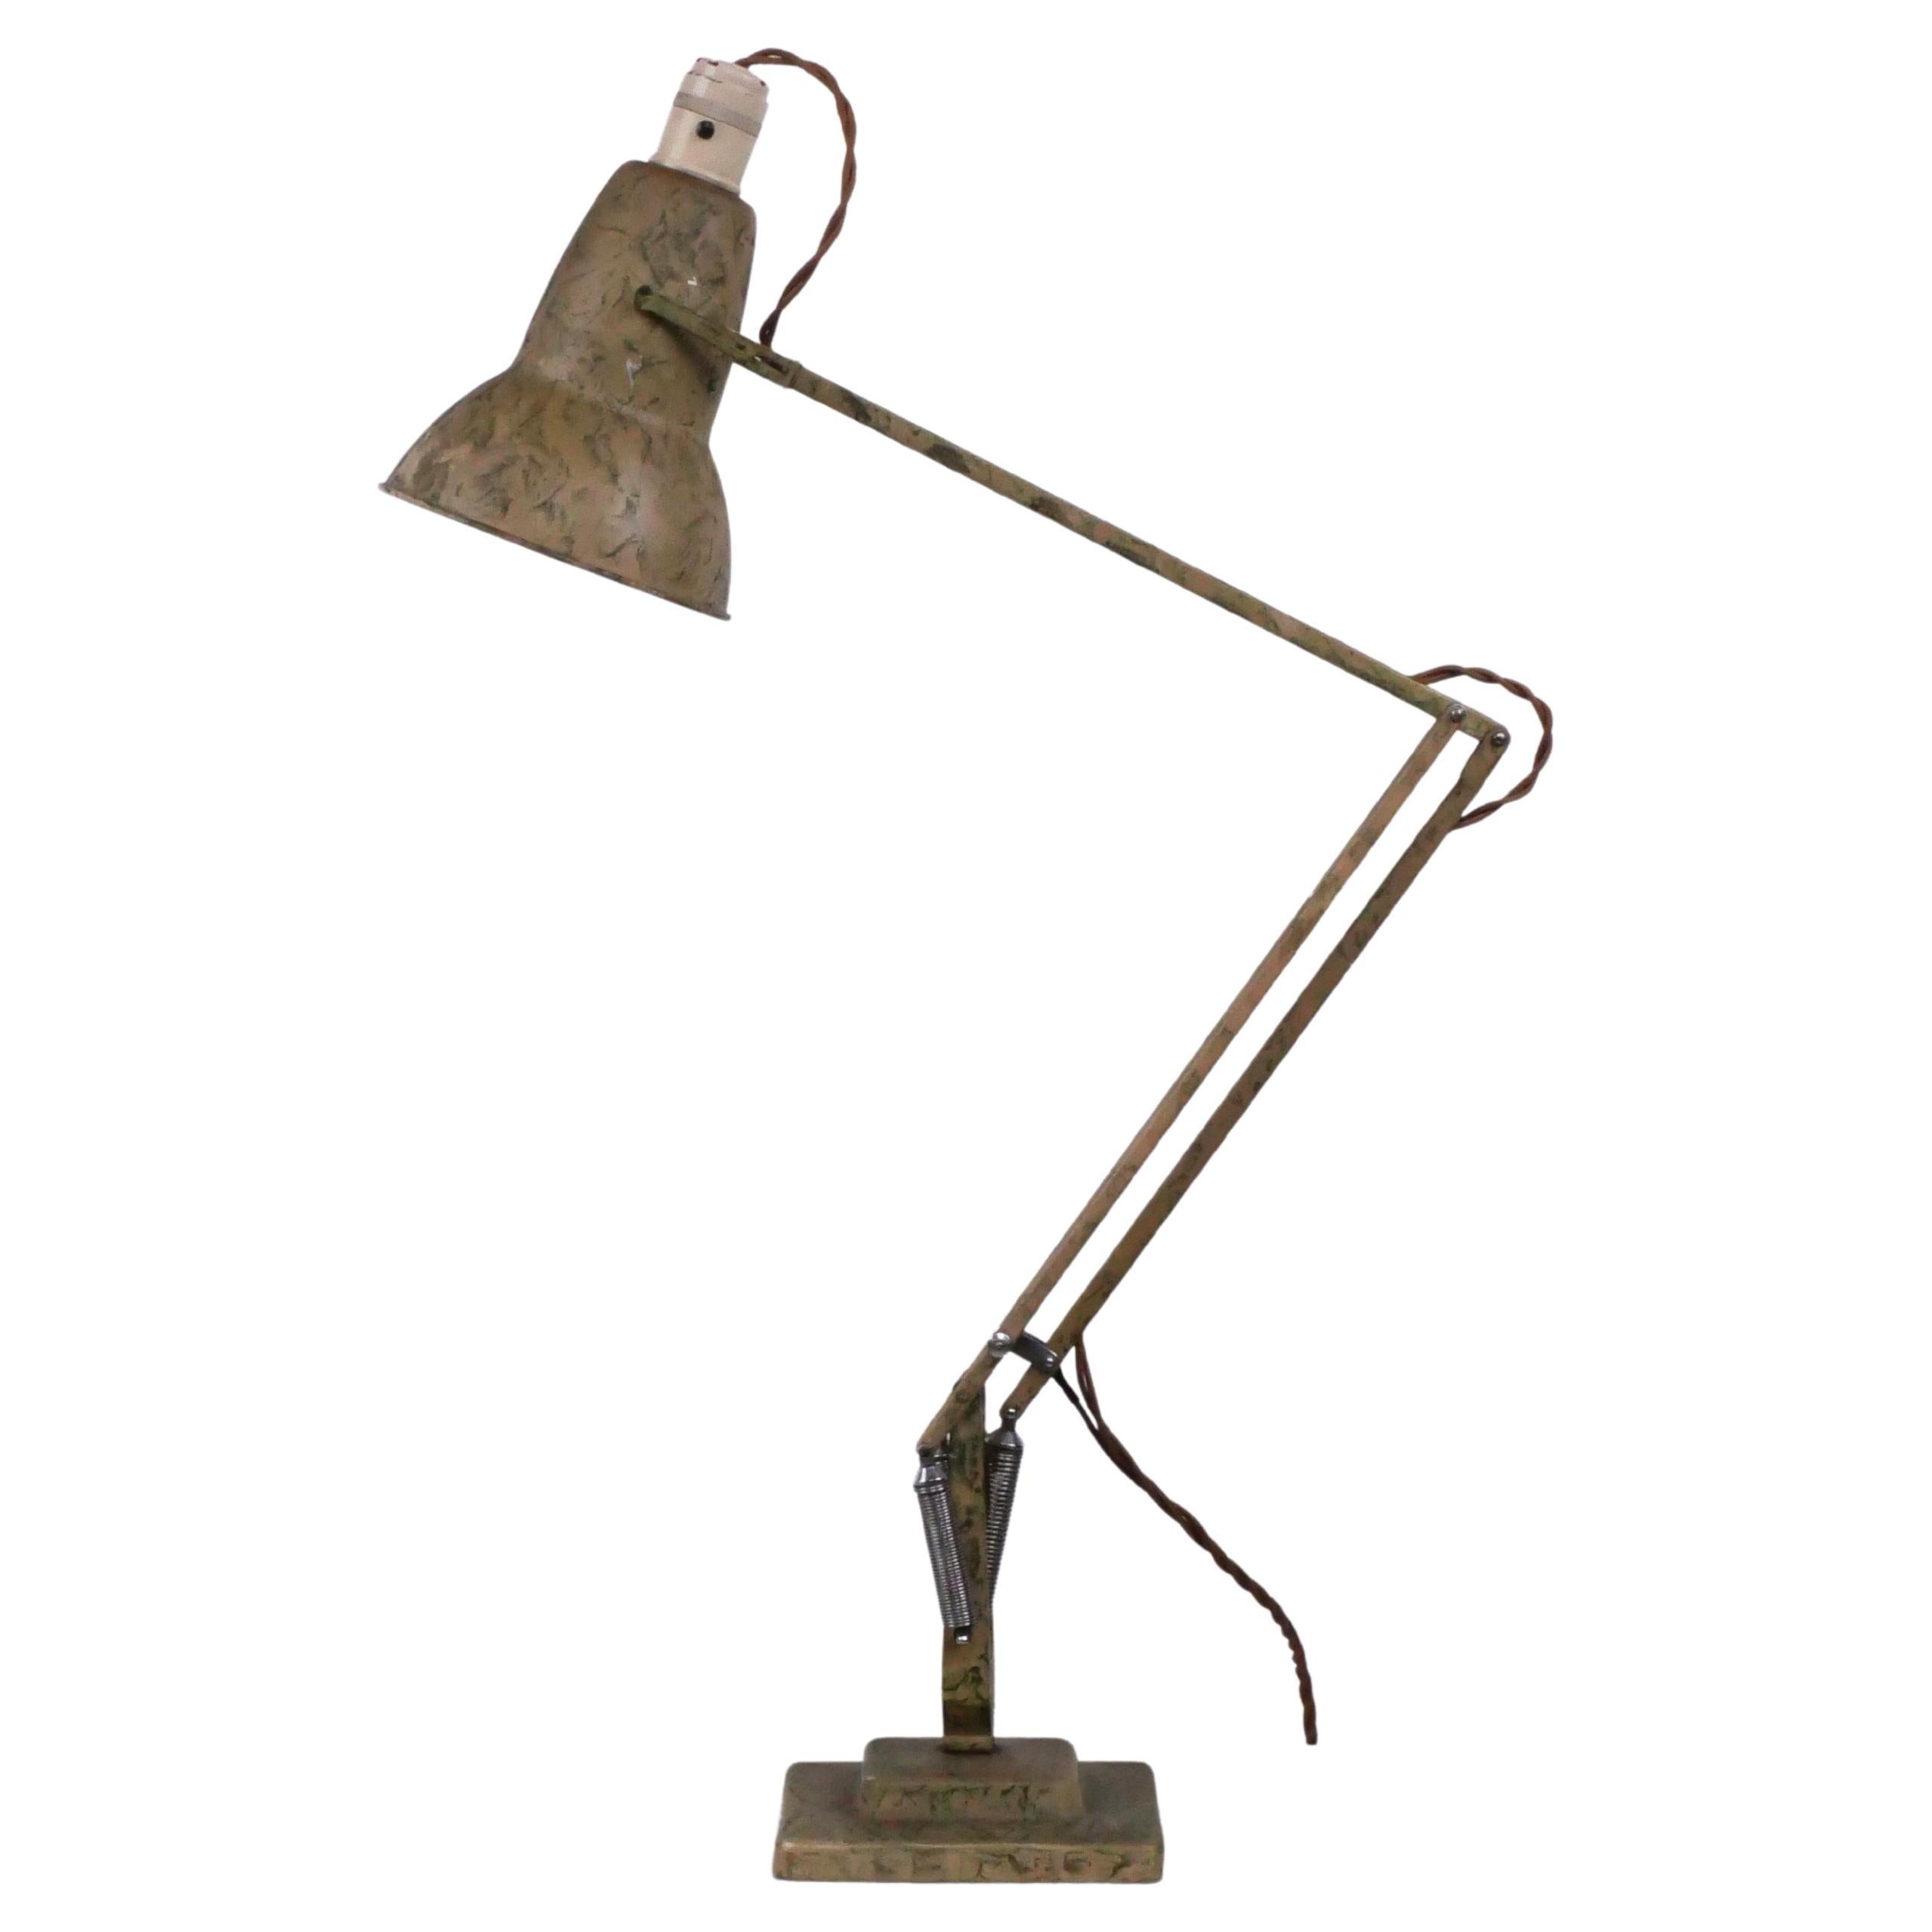 Lampe Modell 1227 aus der Mitte des Jahrhunderts, original, neu verkabelt und voll funktionsfähig